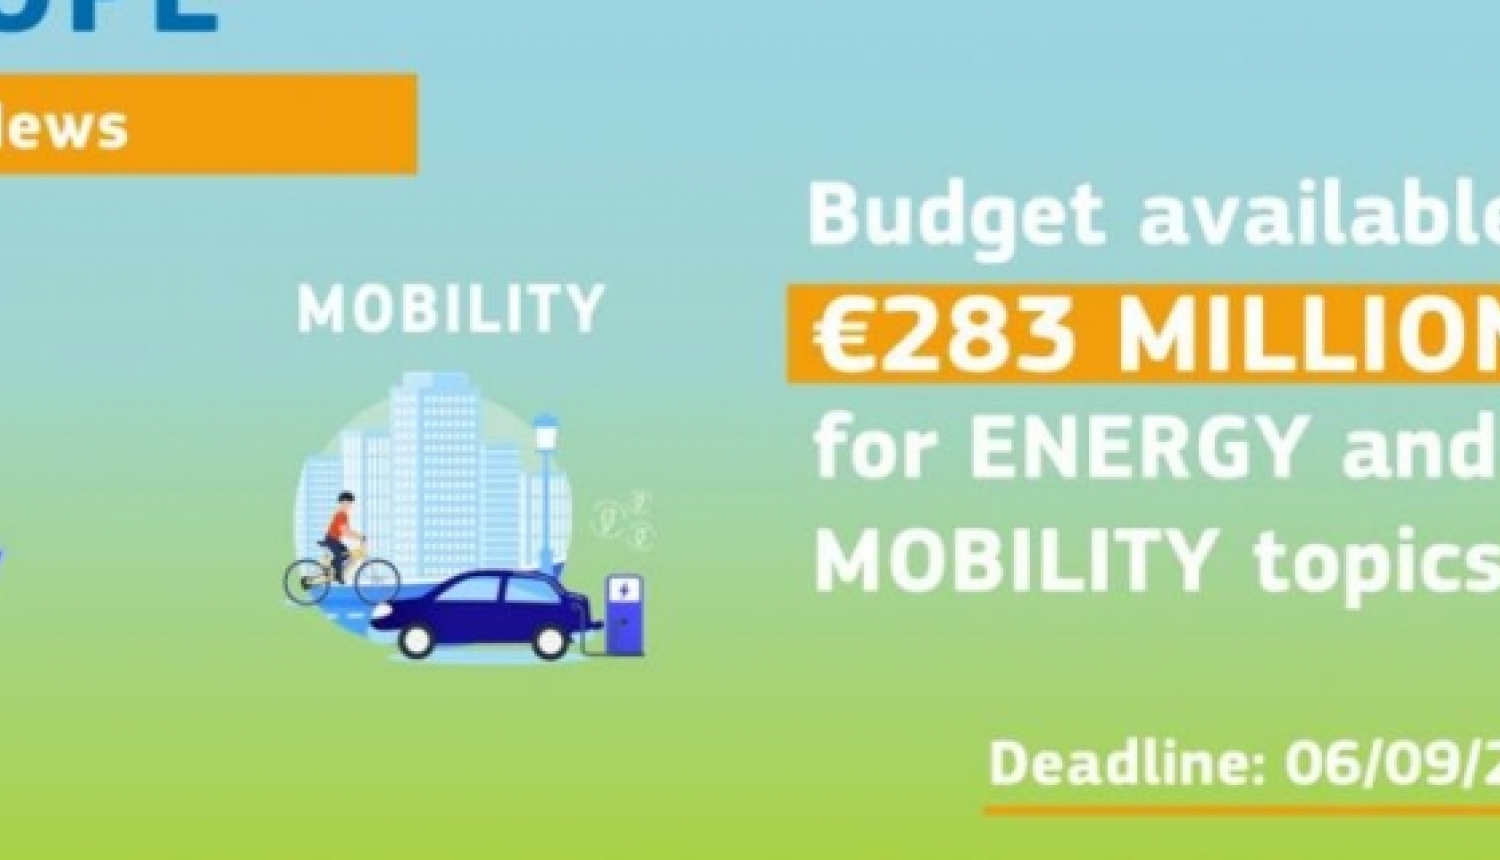 Apvārsnis Eiropa konkursi tematikā “Klimats, enerģētika un mobilitāte”